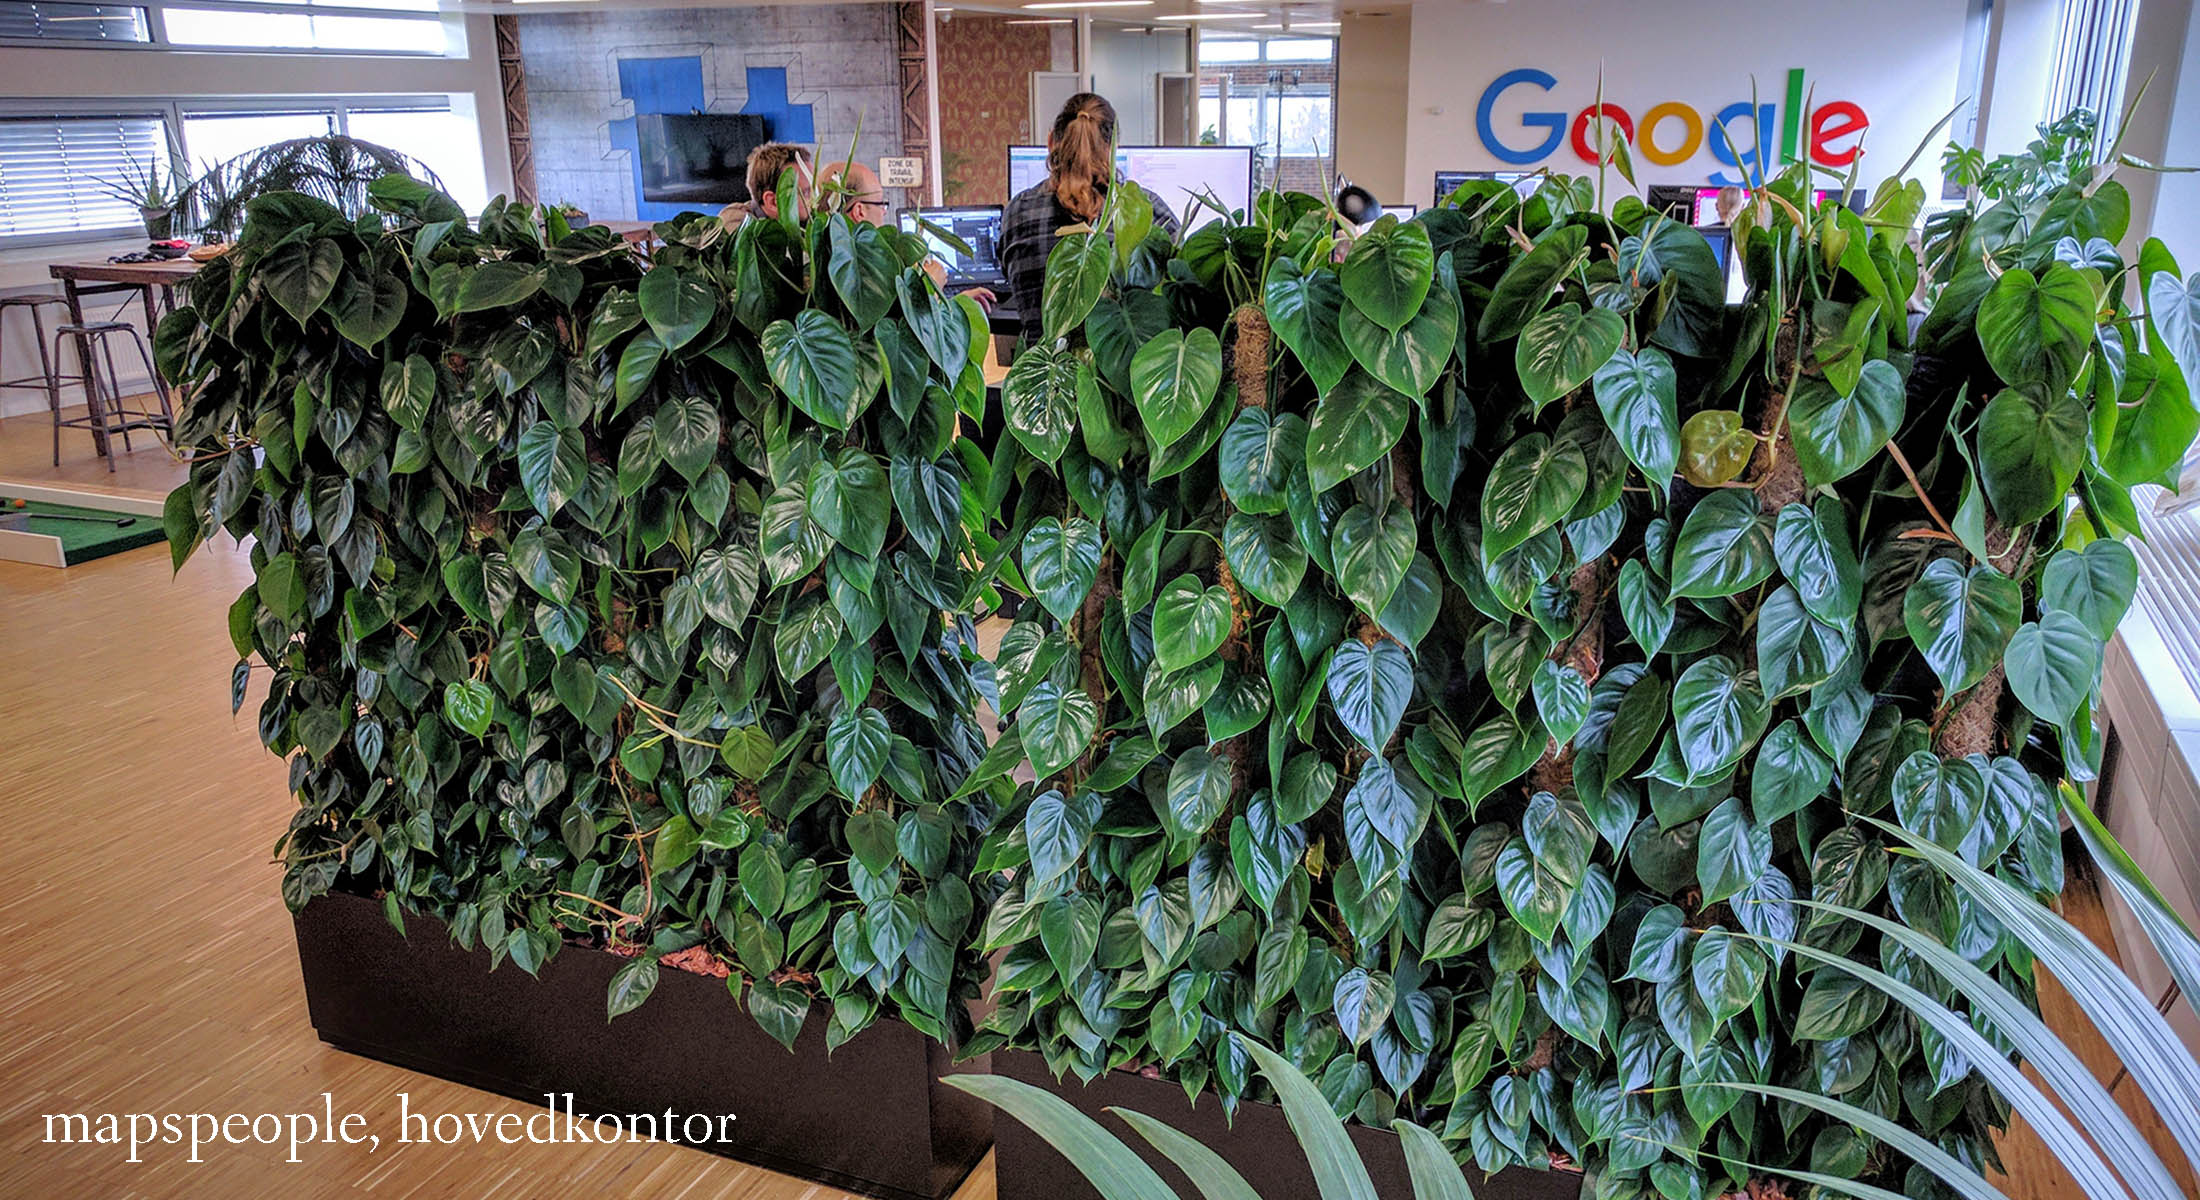 plantevæg til Google